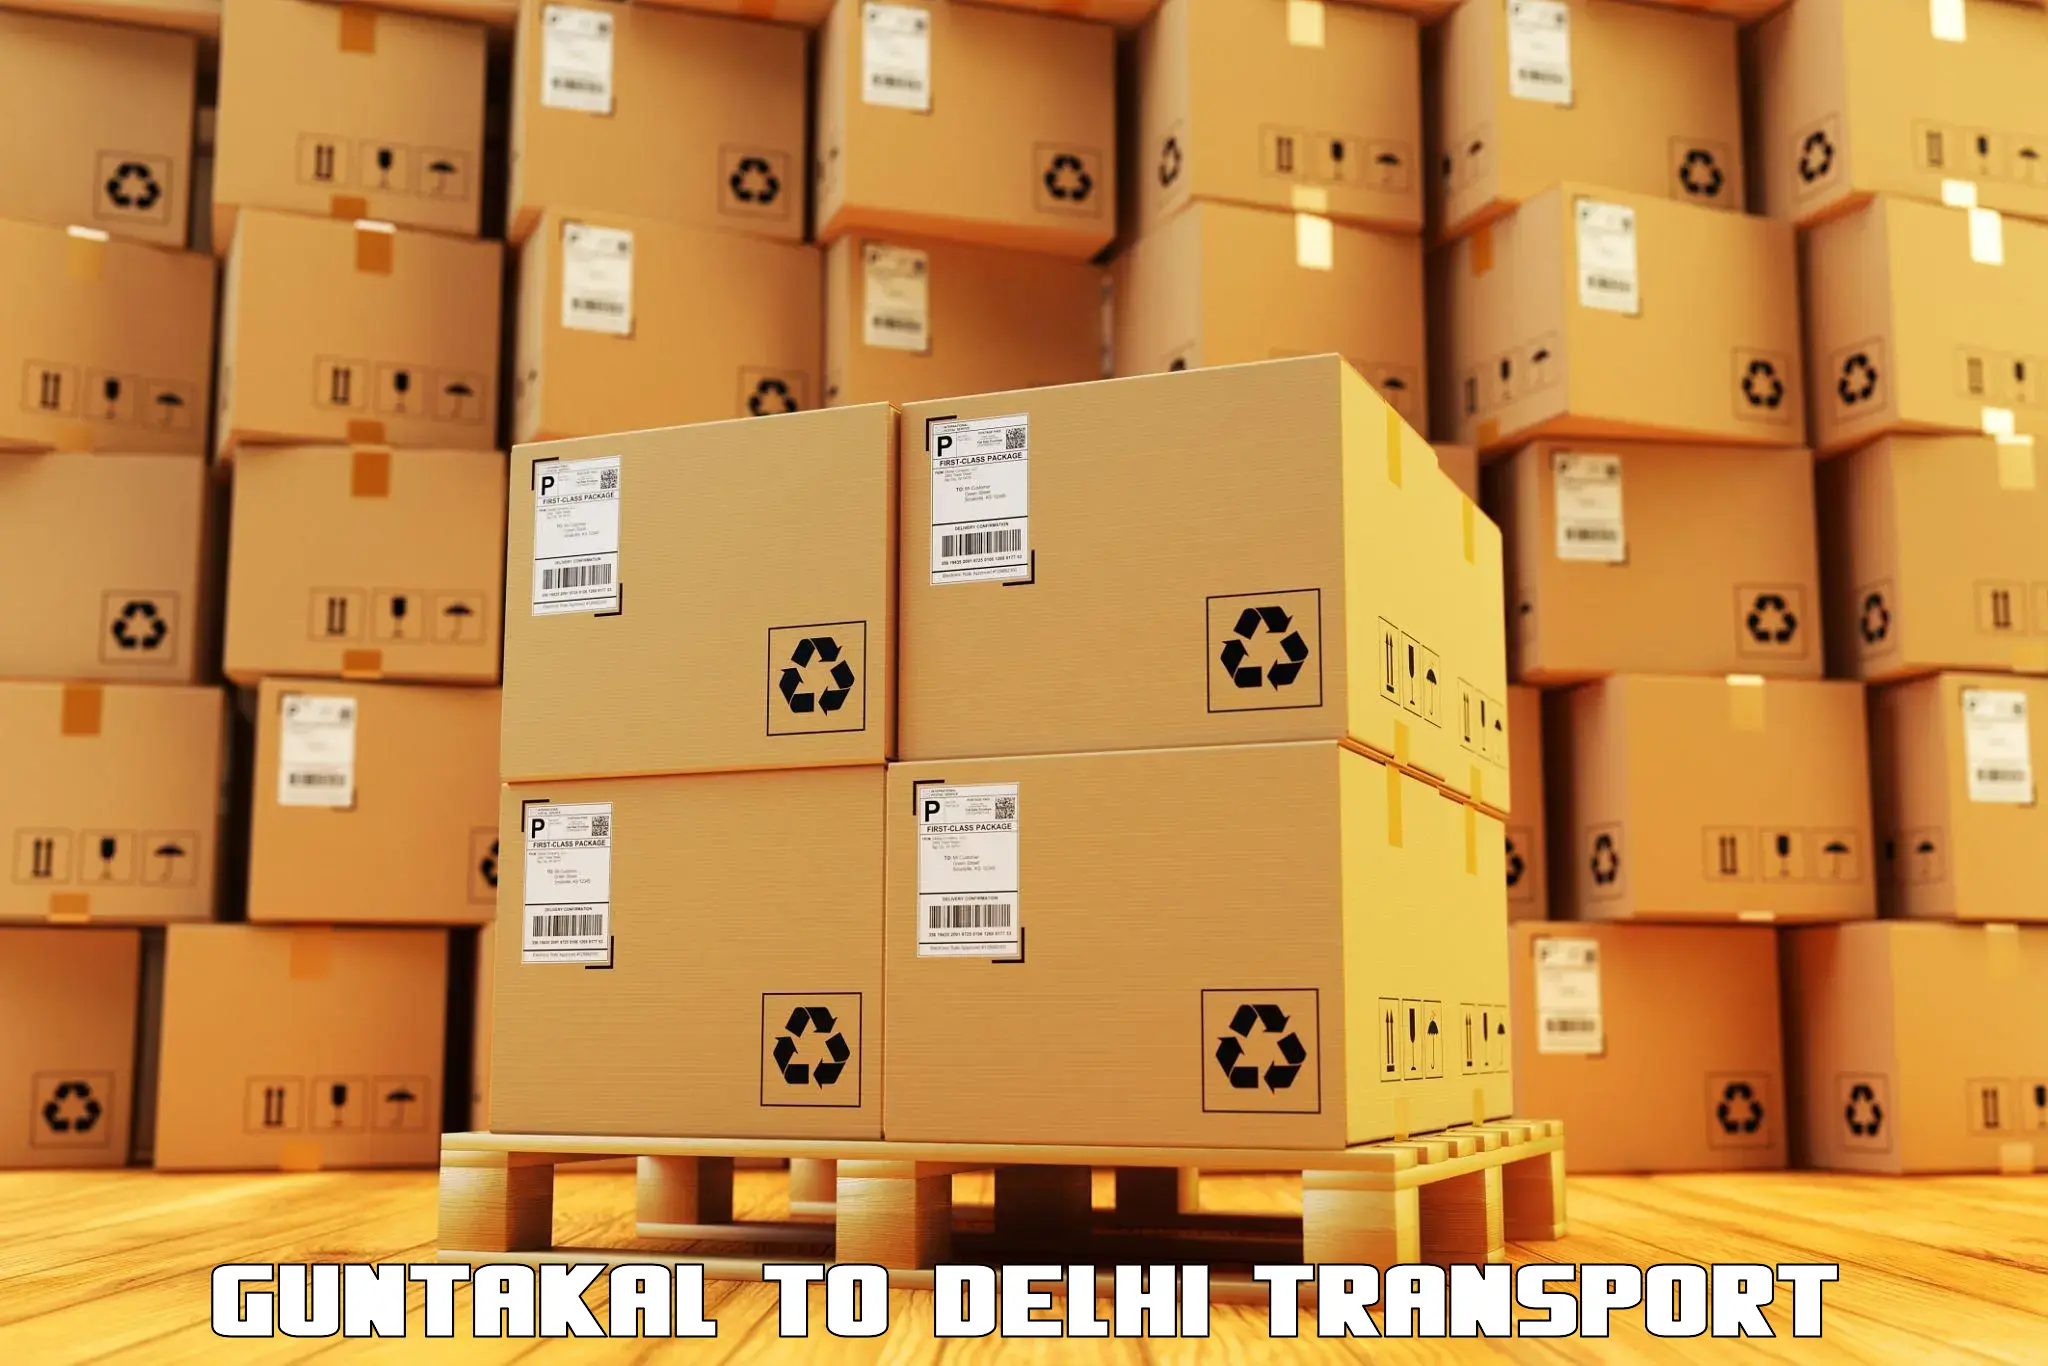 Nearest transport service Guntakal to East Delhi